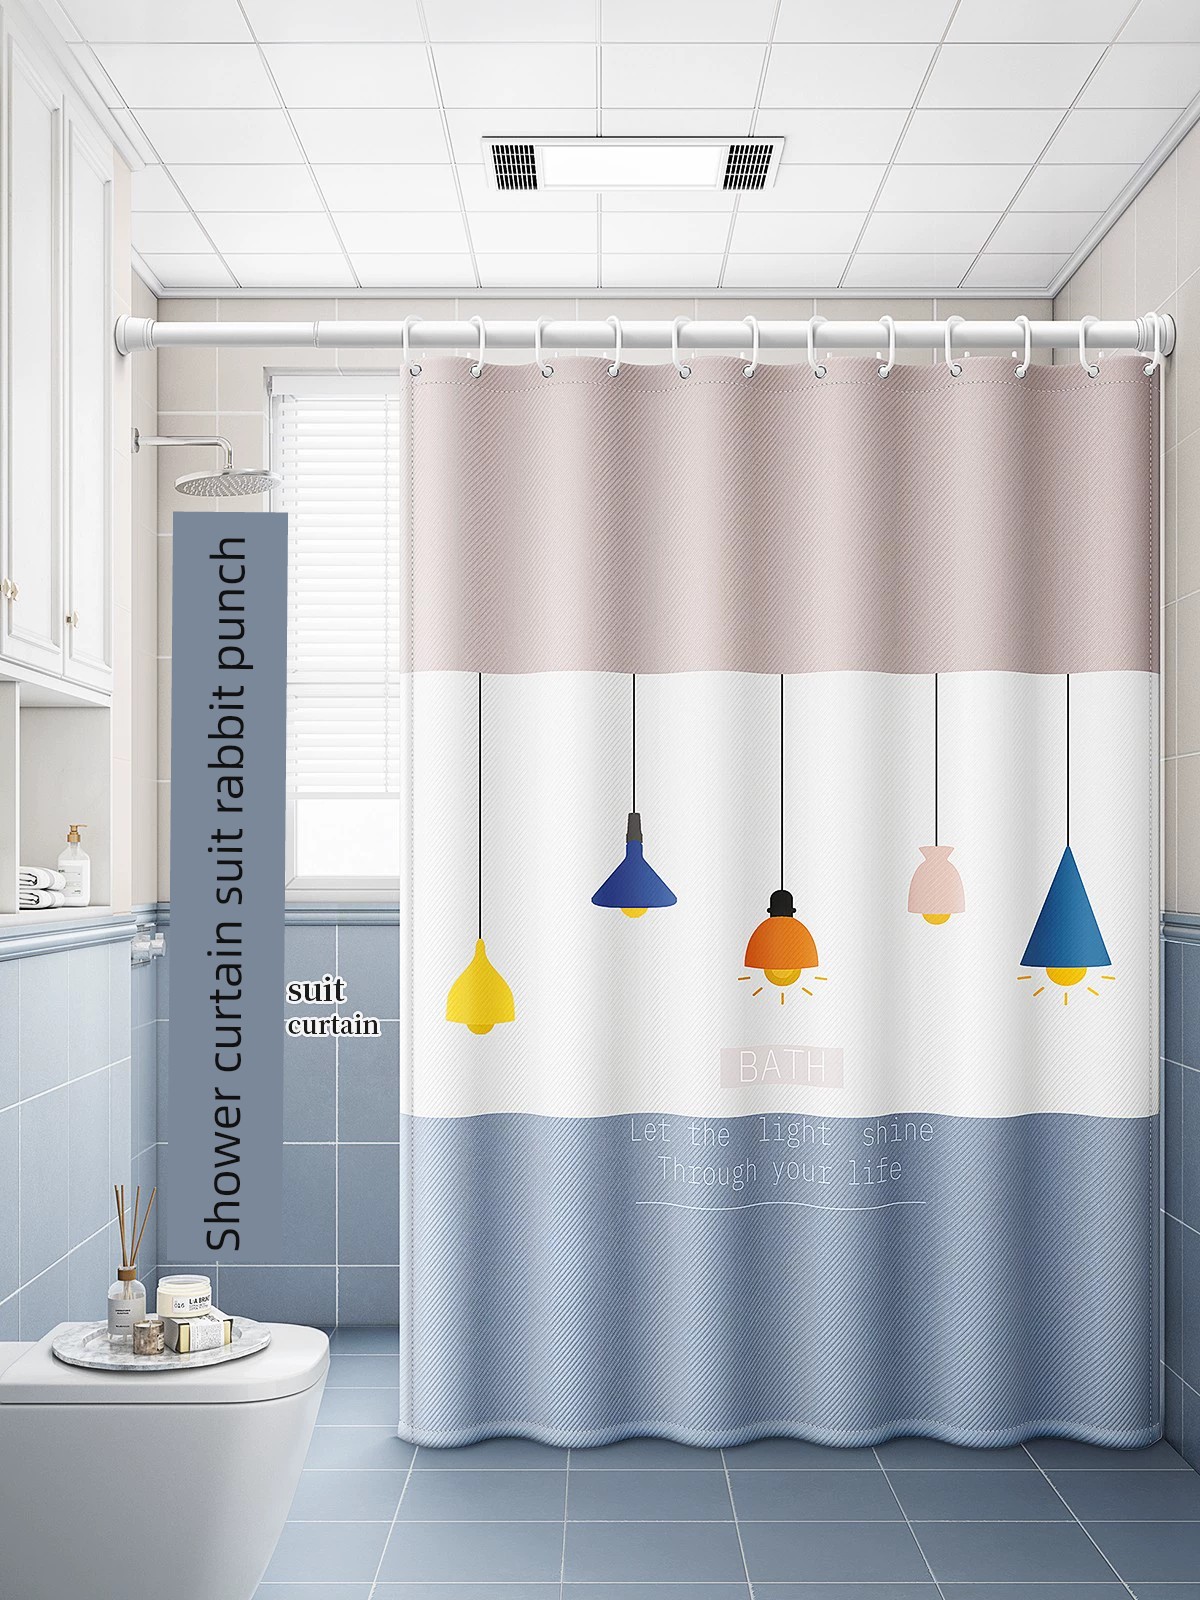 獨特北歐風 浴室浴簾套裝 免打孔安裝 隔段門簾 防水防黴布